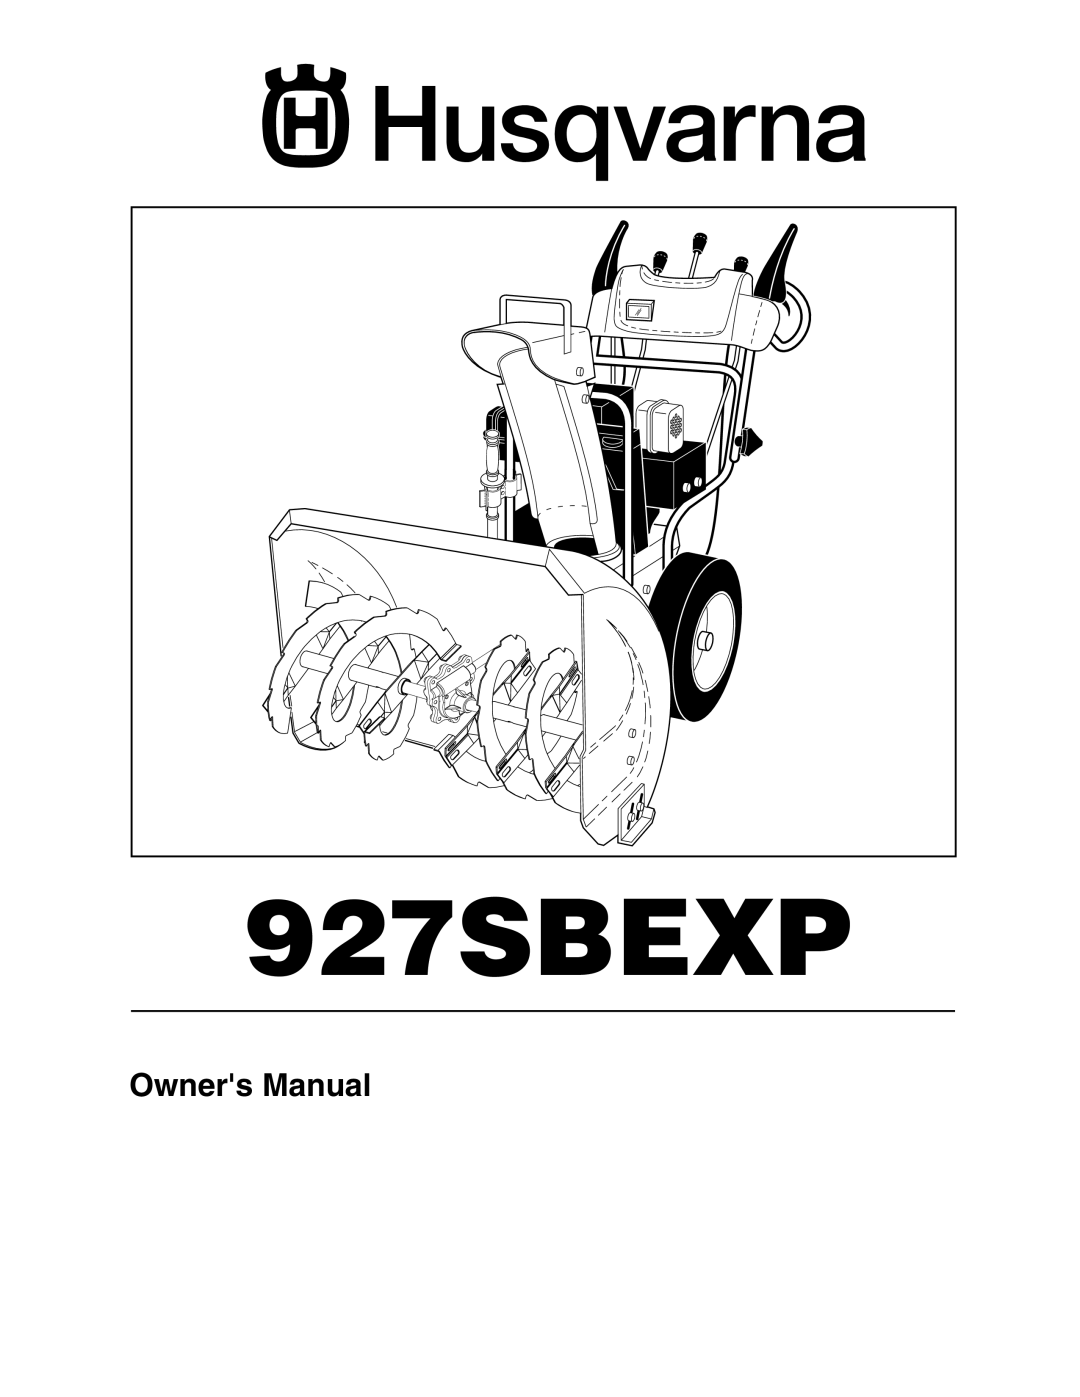 Husqvarna 927SBEXP owner manual Owners Manual 